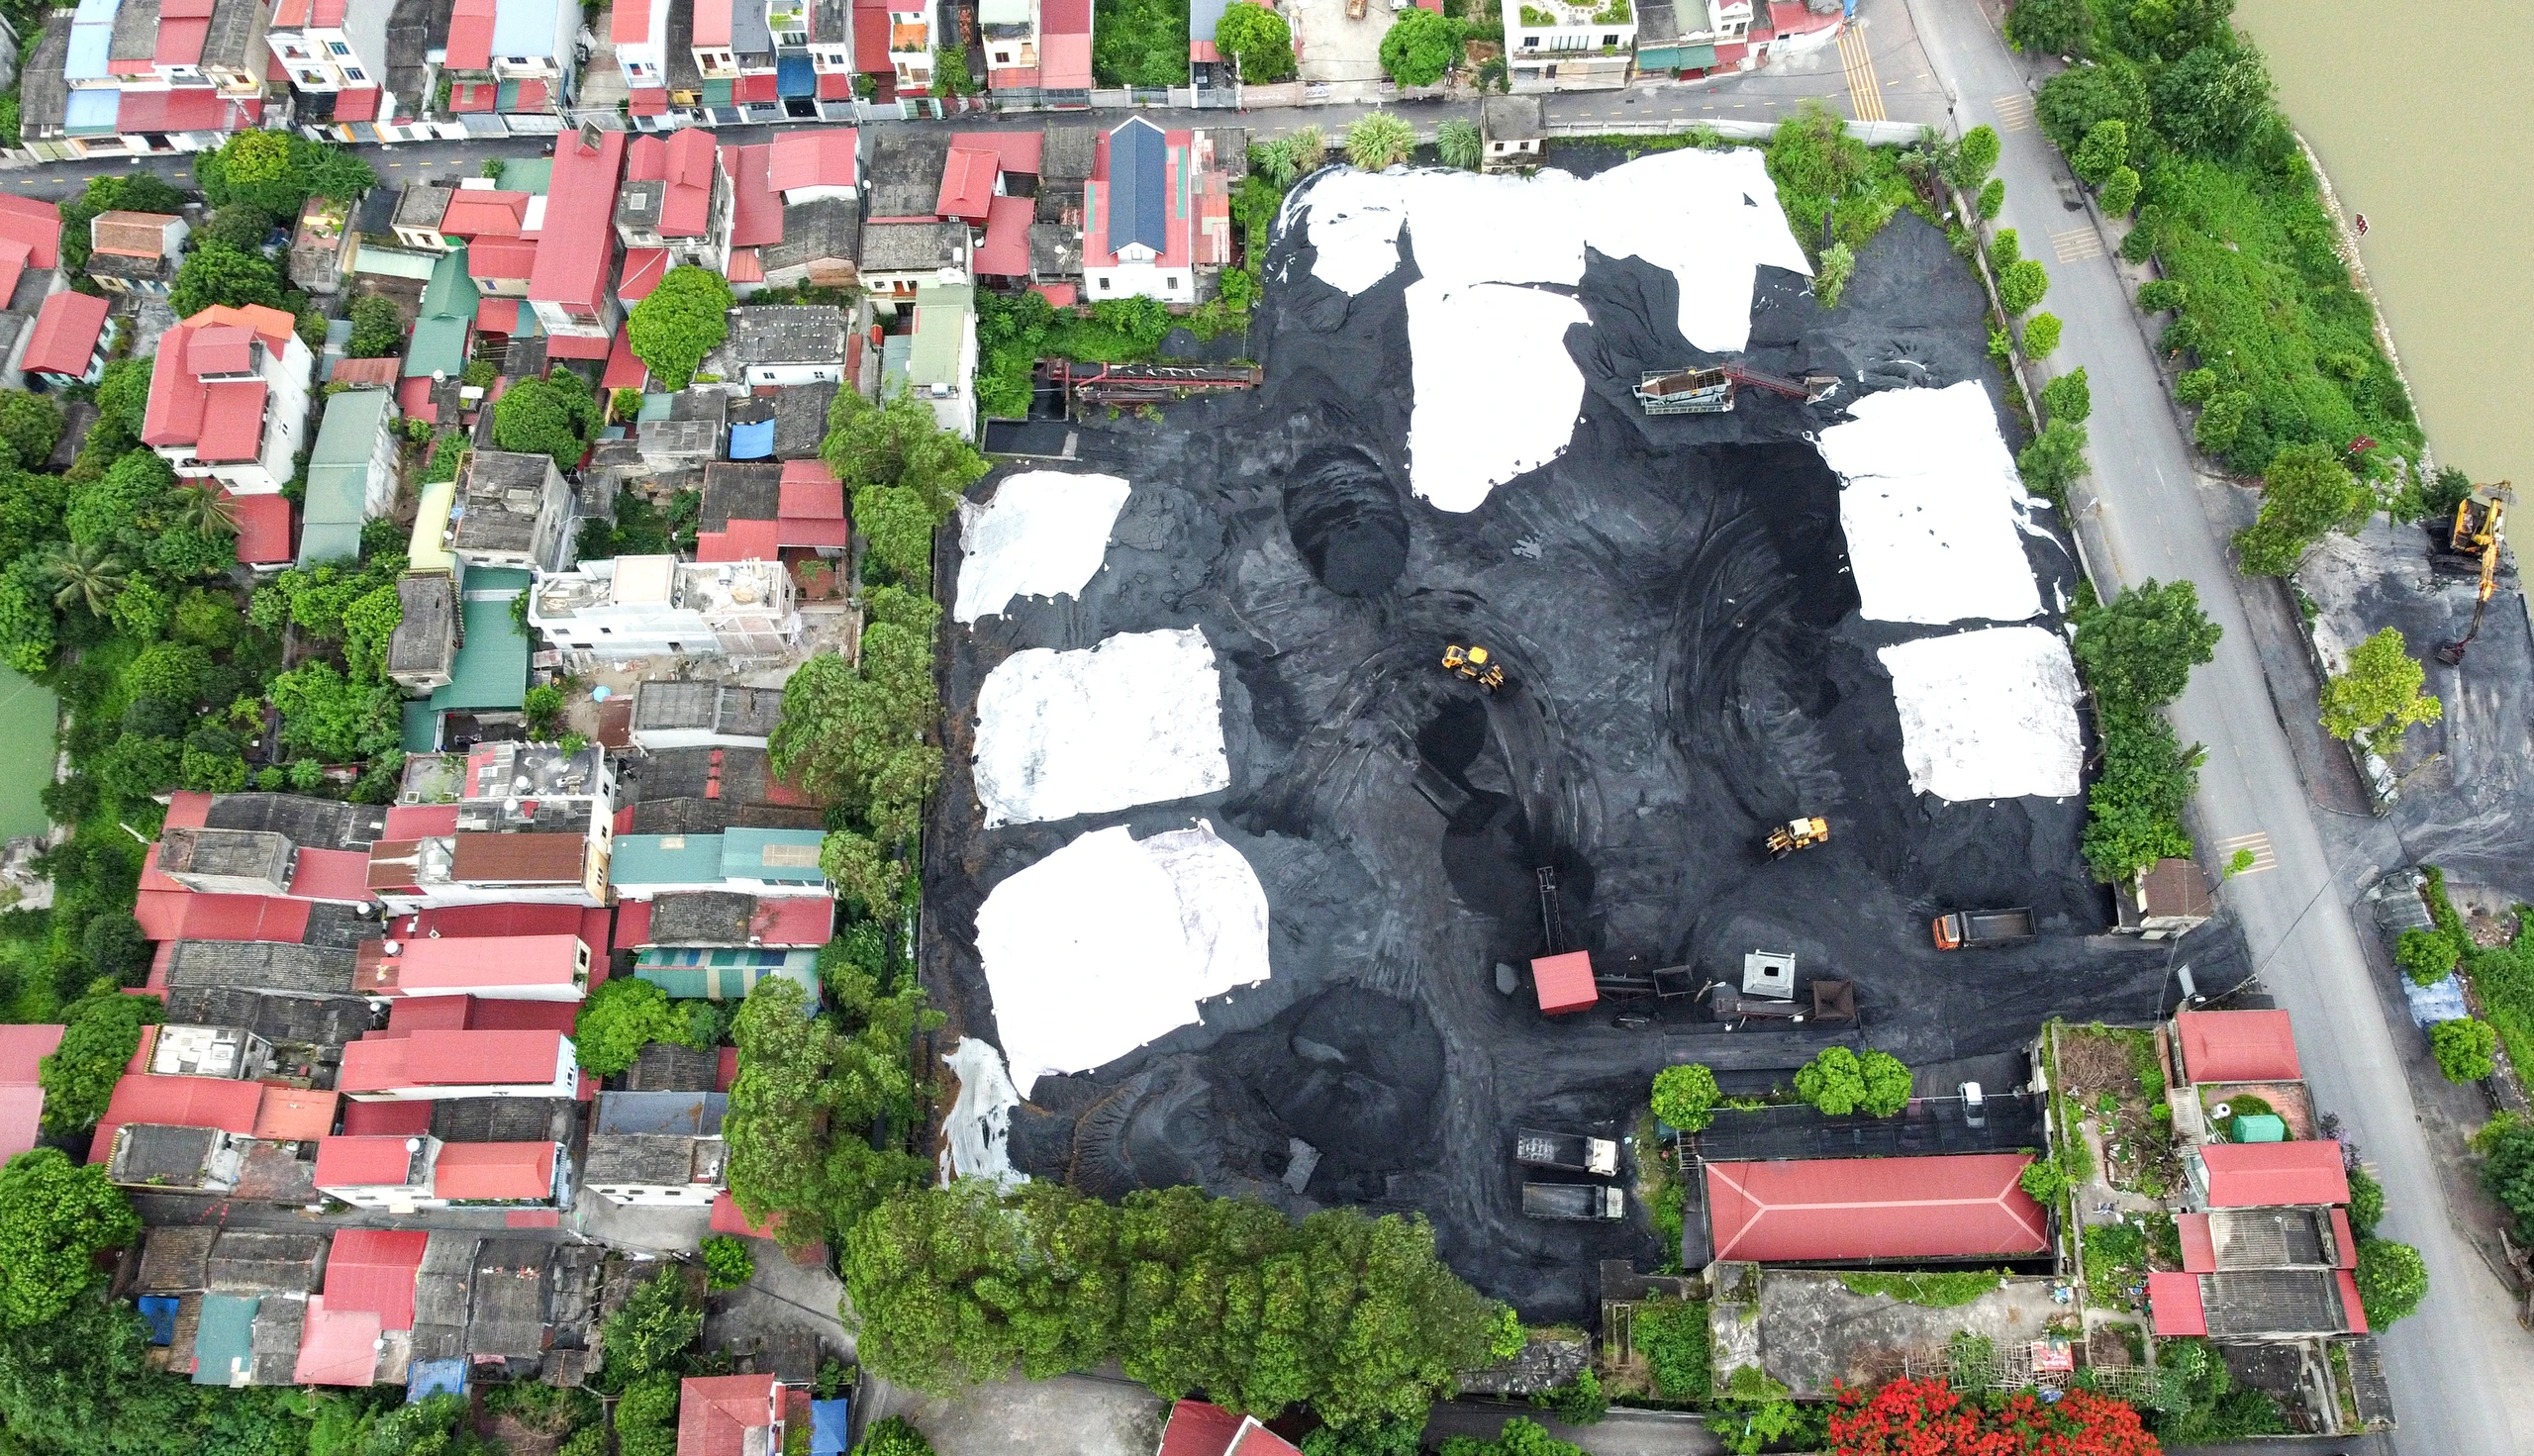 Người dân sống khổ bên bãi than khổng lồ: Đoàn kiểm tra tỉnh Bắc Ninh nói gì?